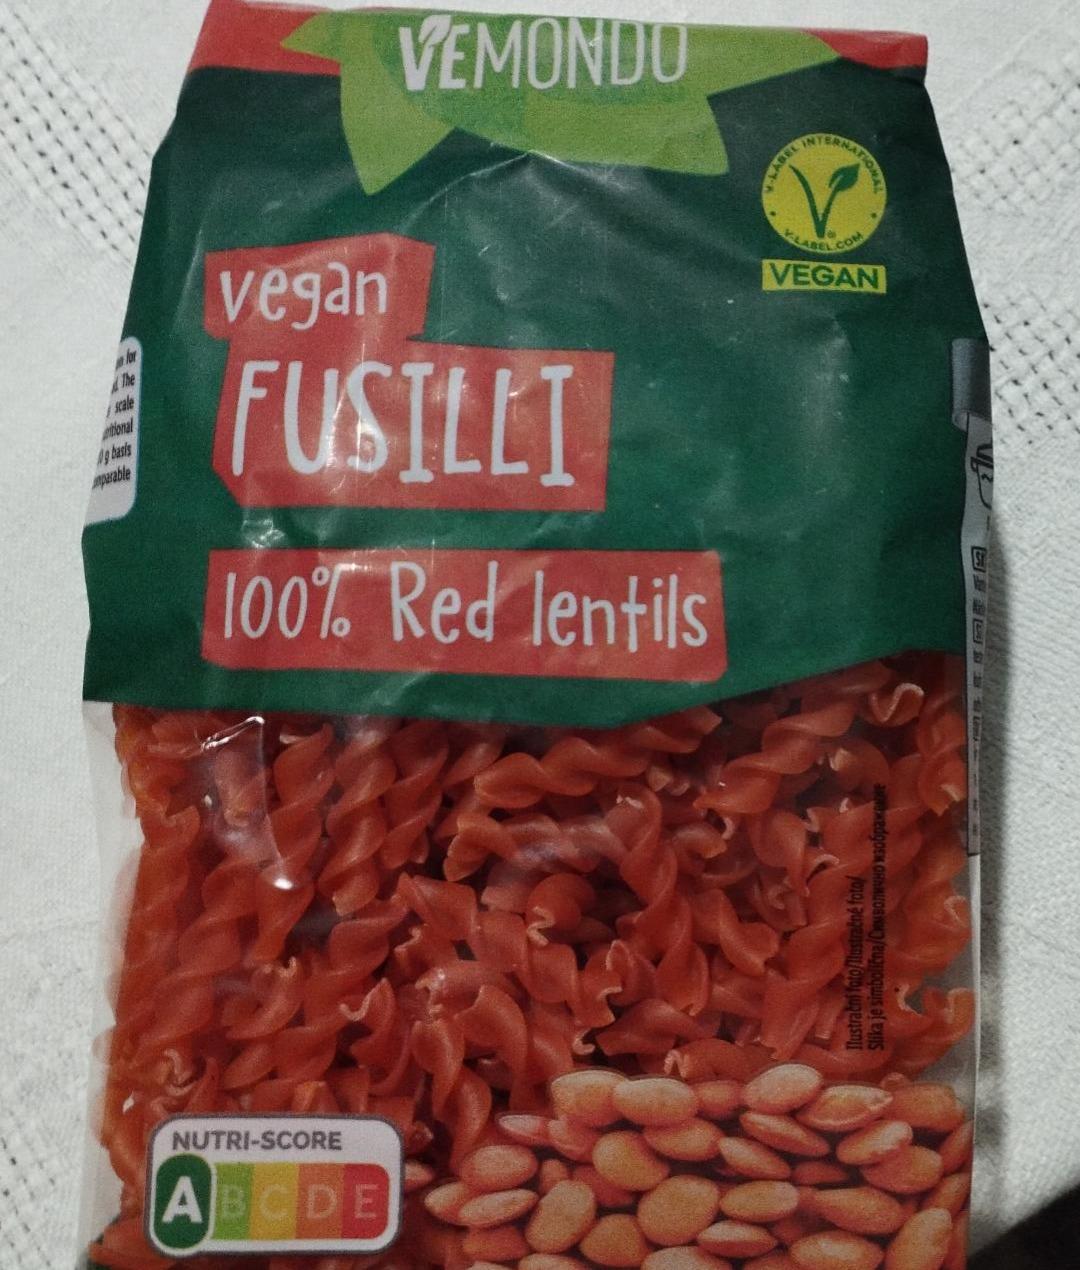 Fotografie - Vegan Fusilli 100% Red lentils Vemondo